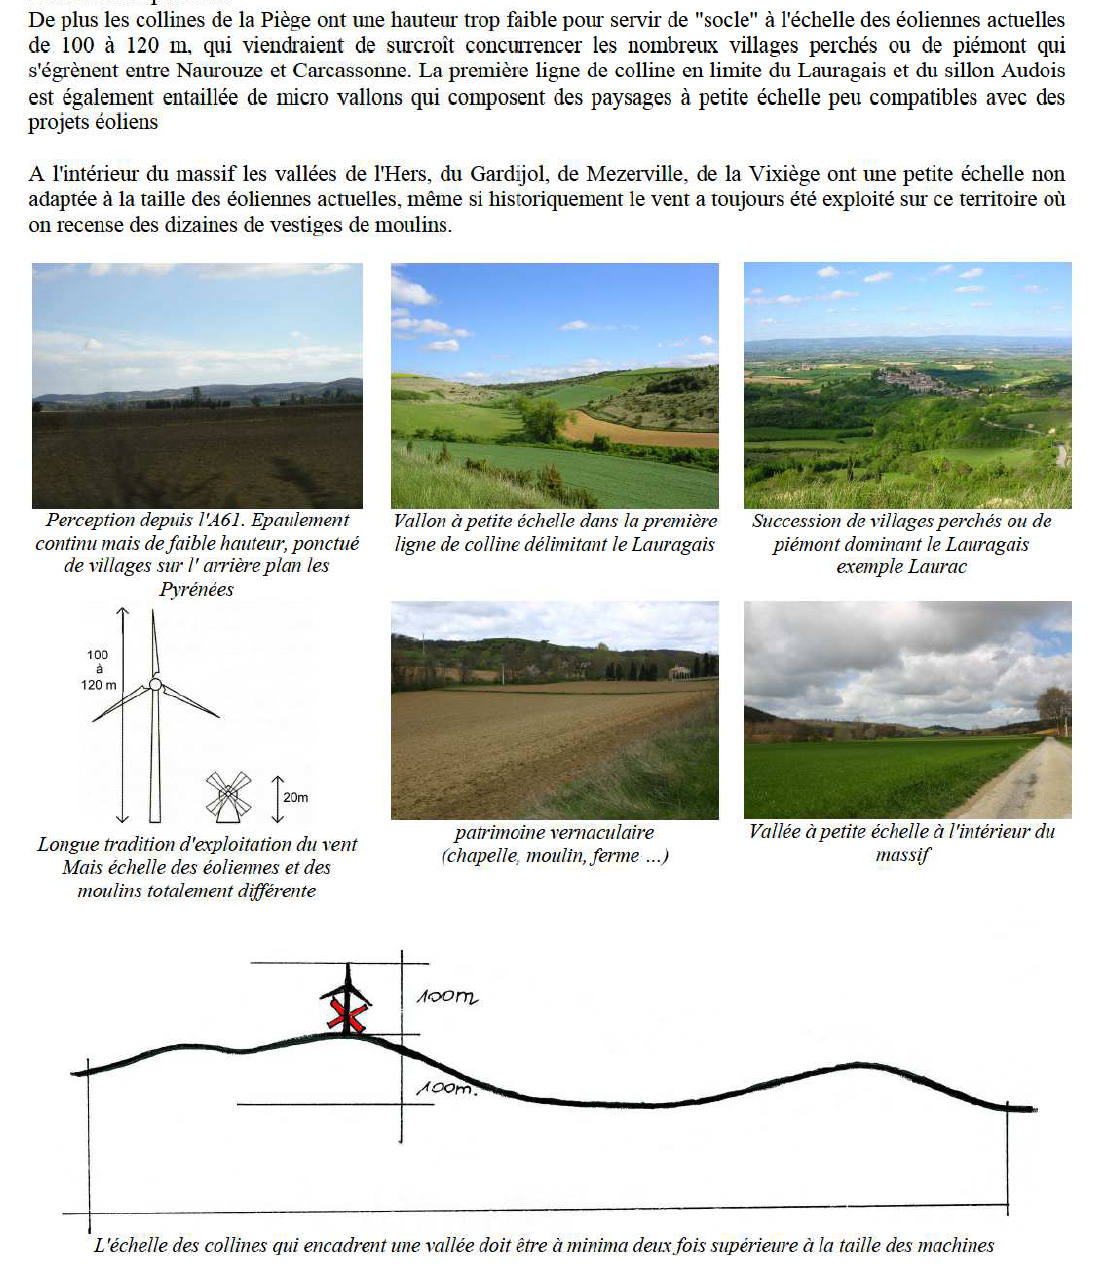 Aménagement du territoire dans l'Aude, plan paysager audois, éoliennes dans la Piège : c'est non !